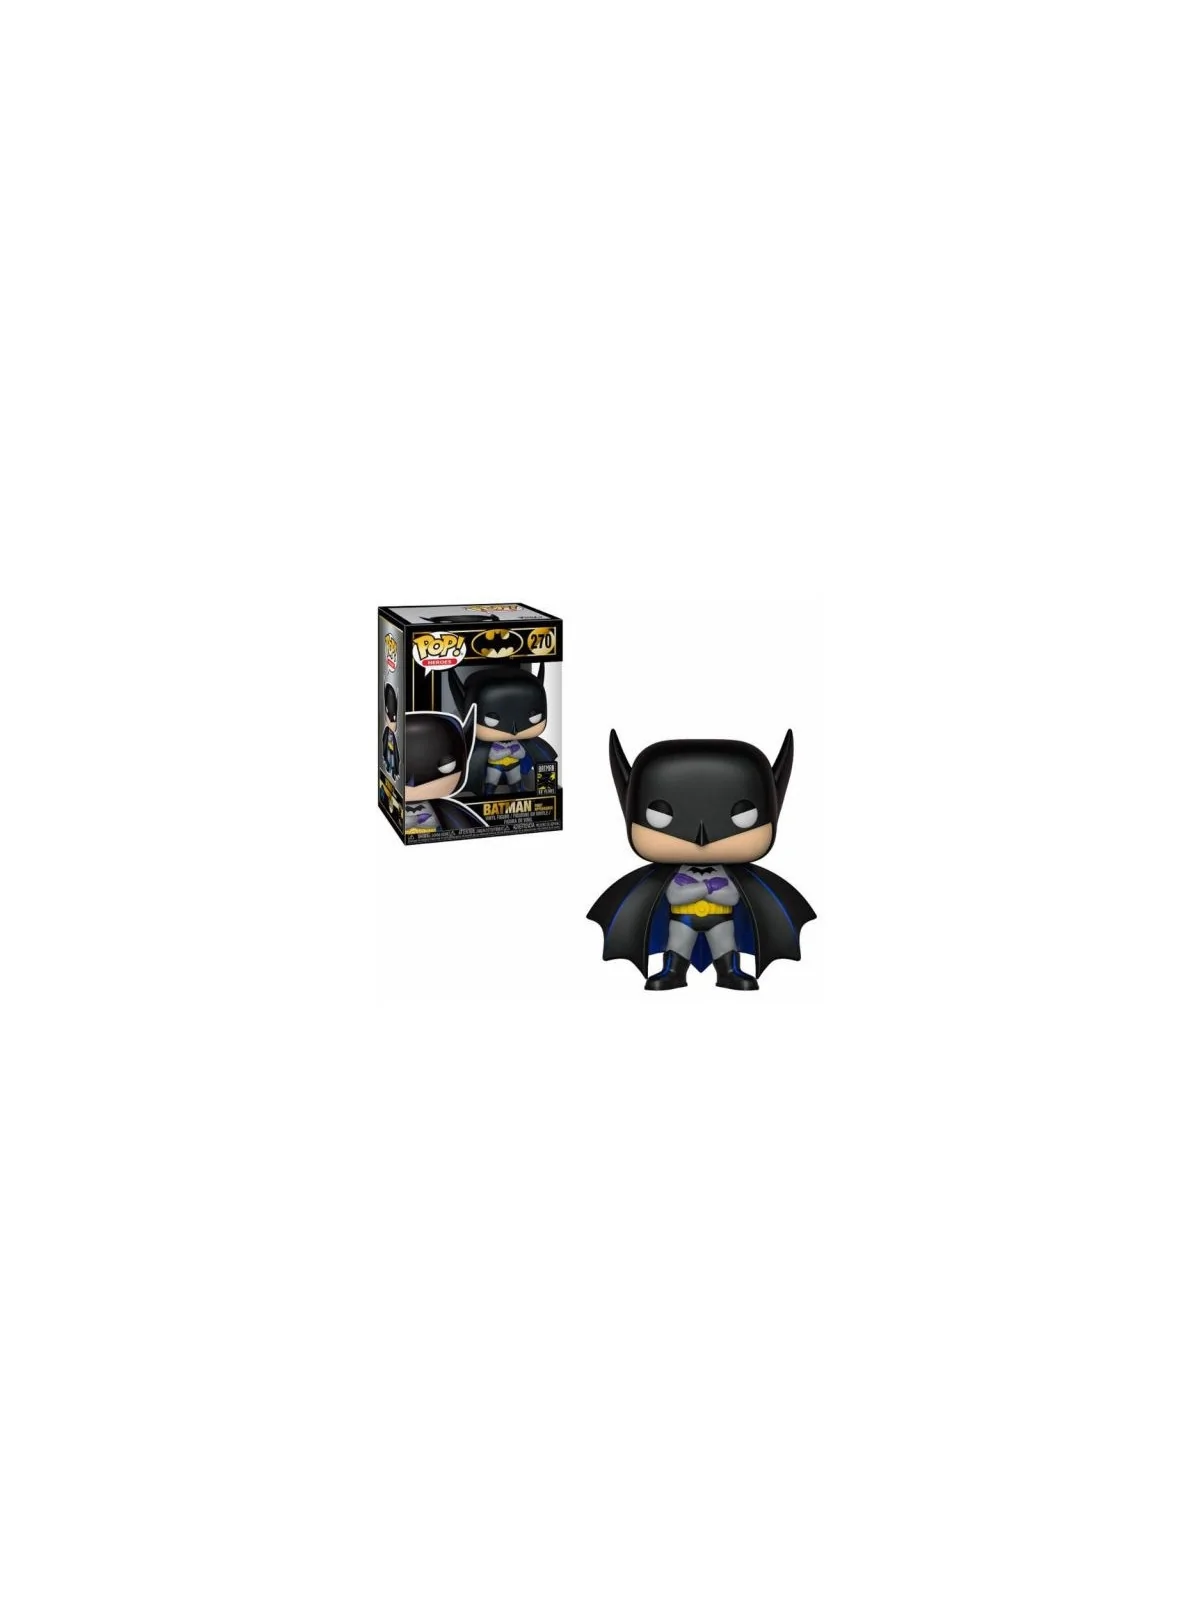 Comprar Funko POP! DC Comics: Batman First Appearance (270) barato al 